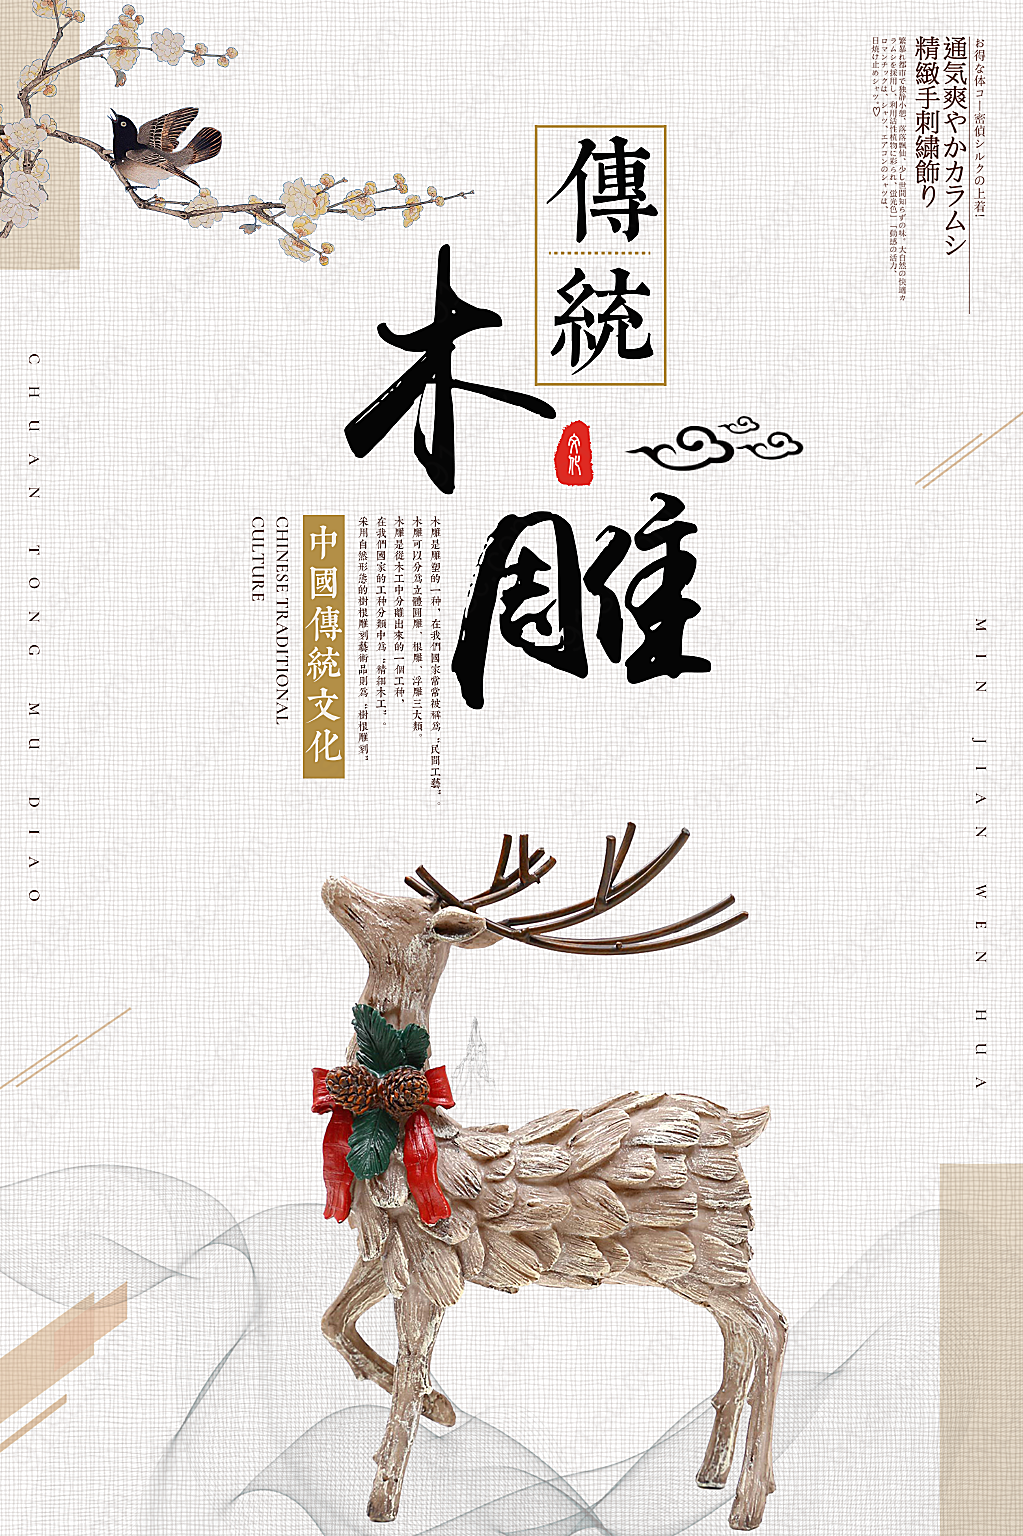 中国传统手艺传承设计公益公益公益海报